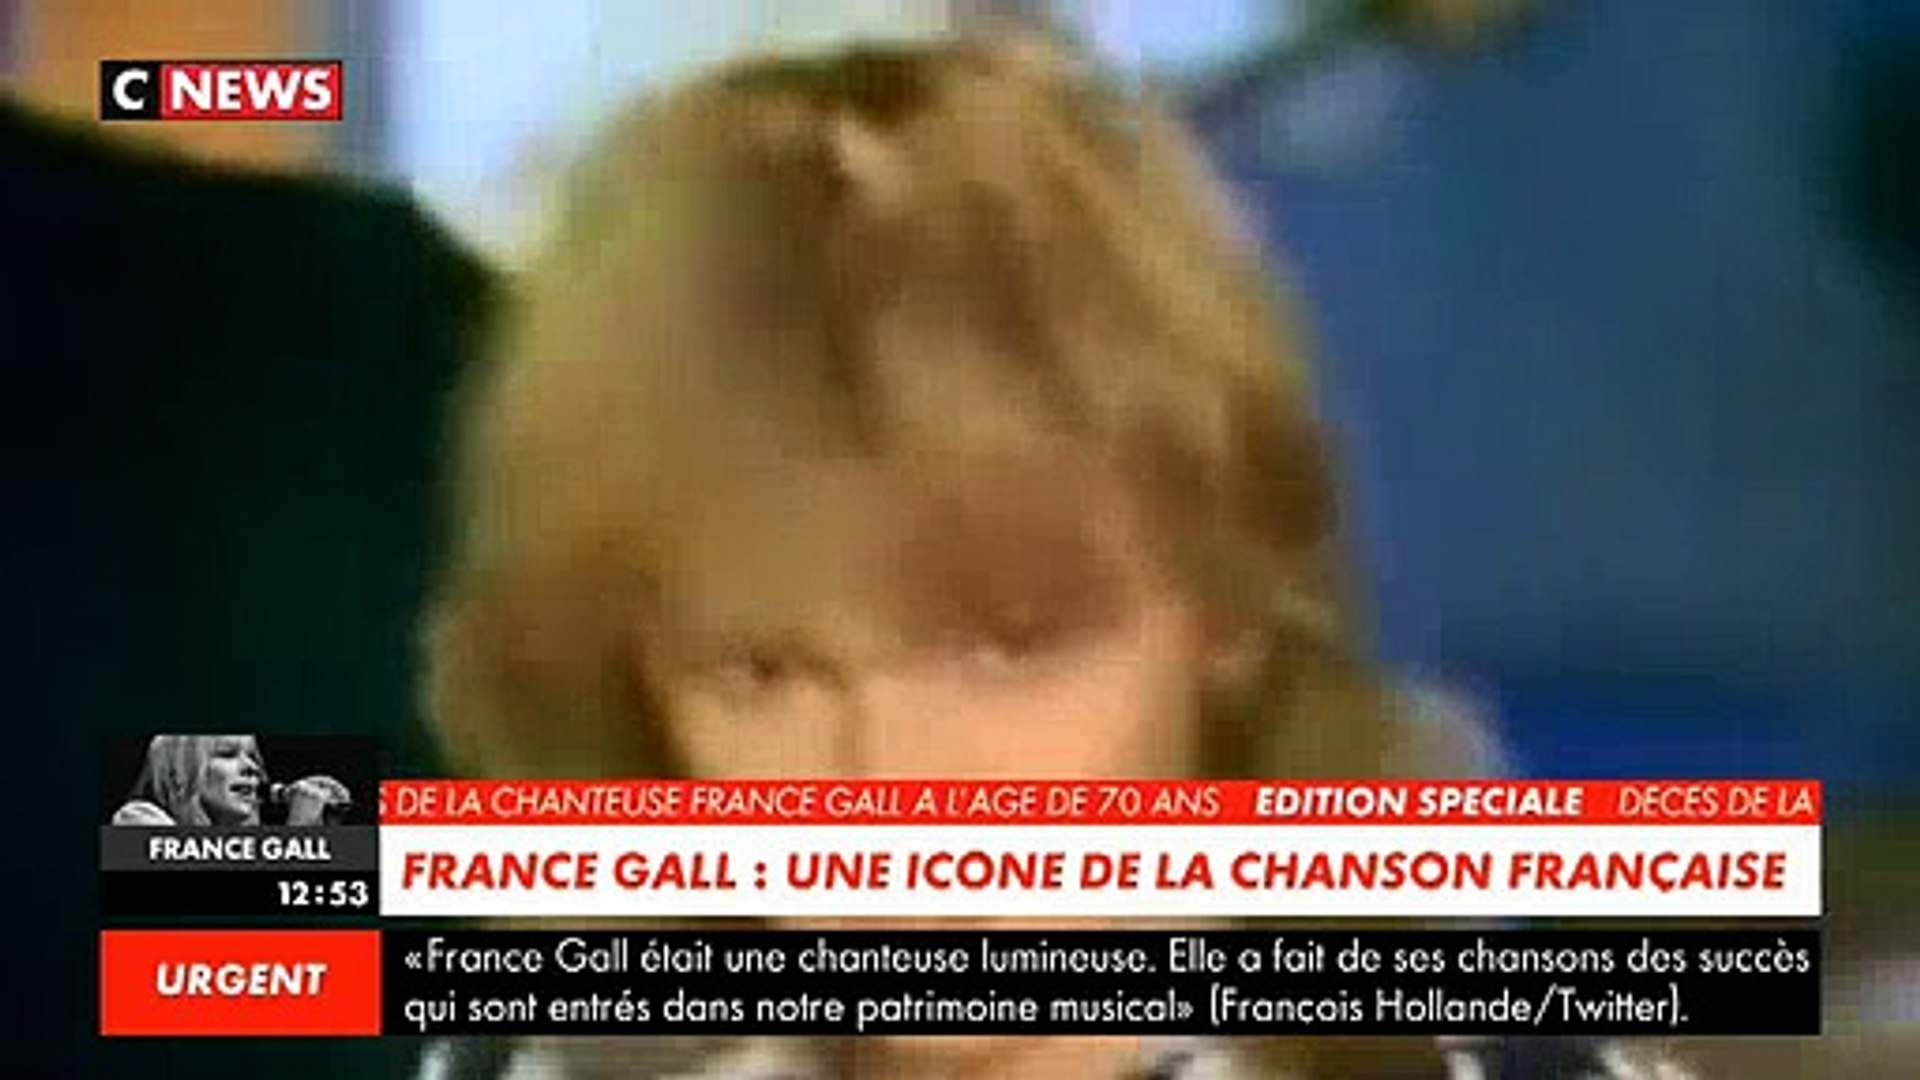 DISPARITION. La chanteuse France Gall est décédée à l'âge de 70 ans